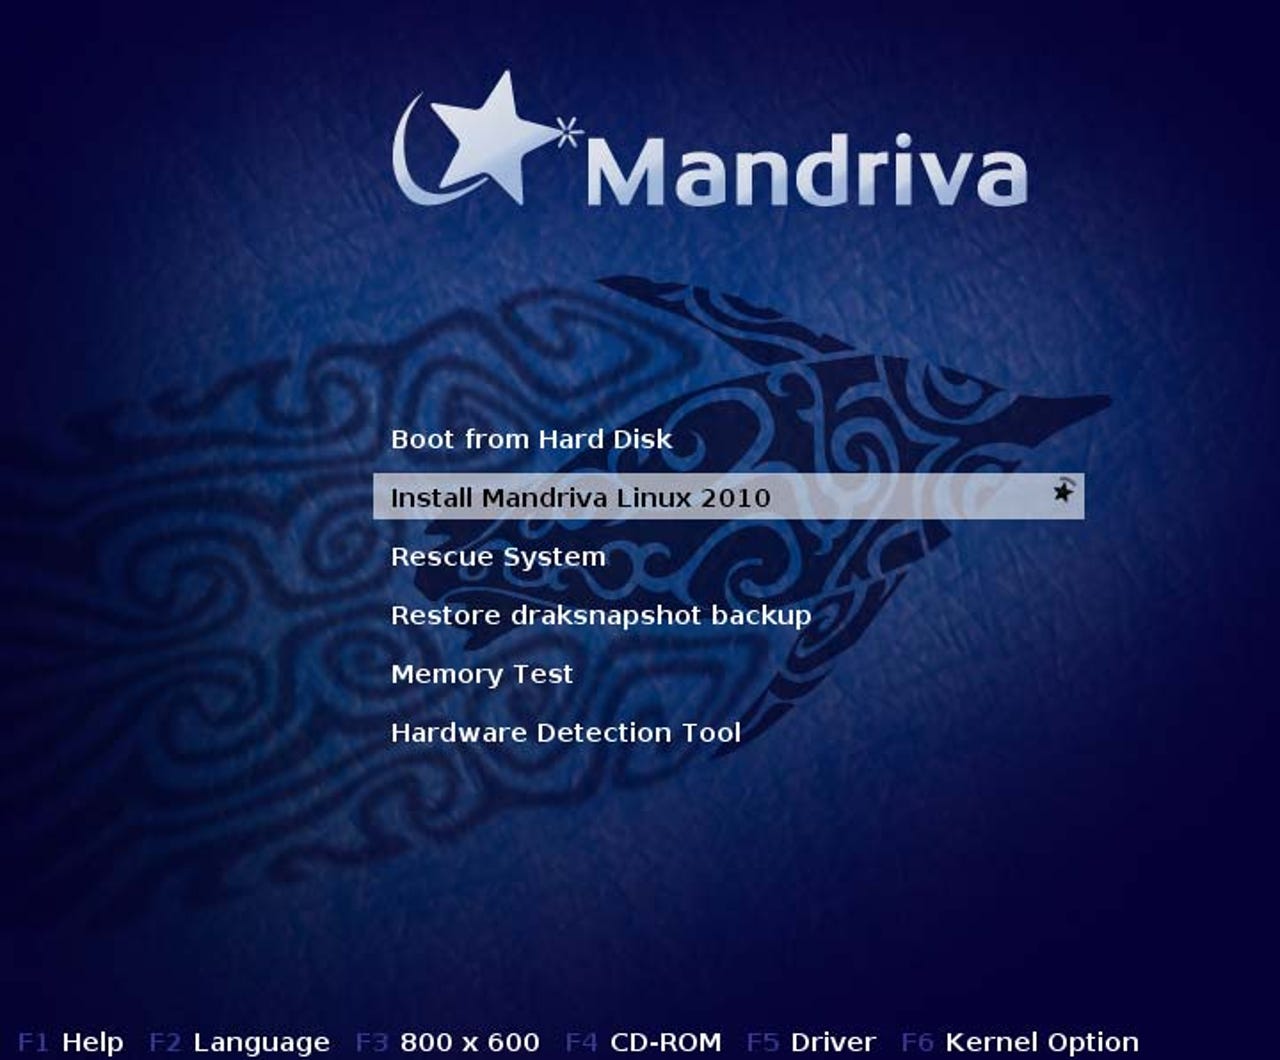 mandriva-2010-beta-screenshots1.jpg